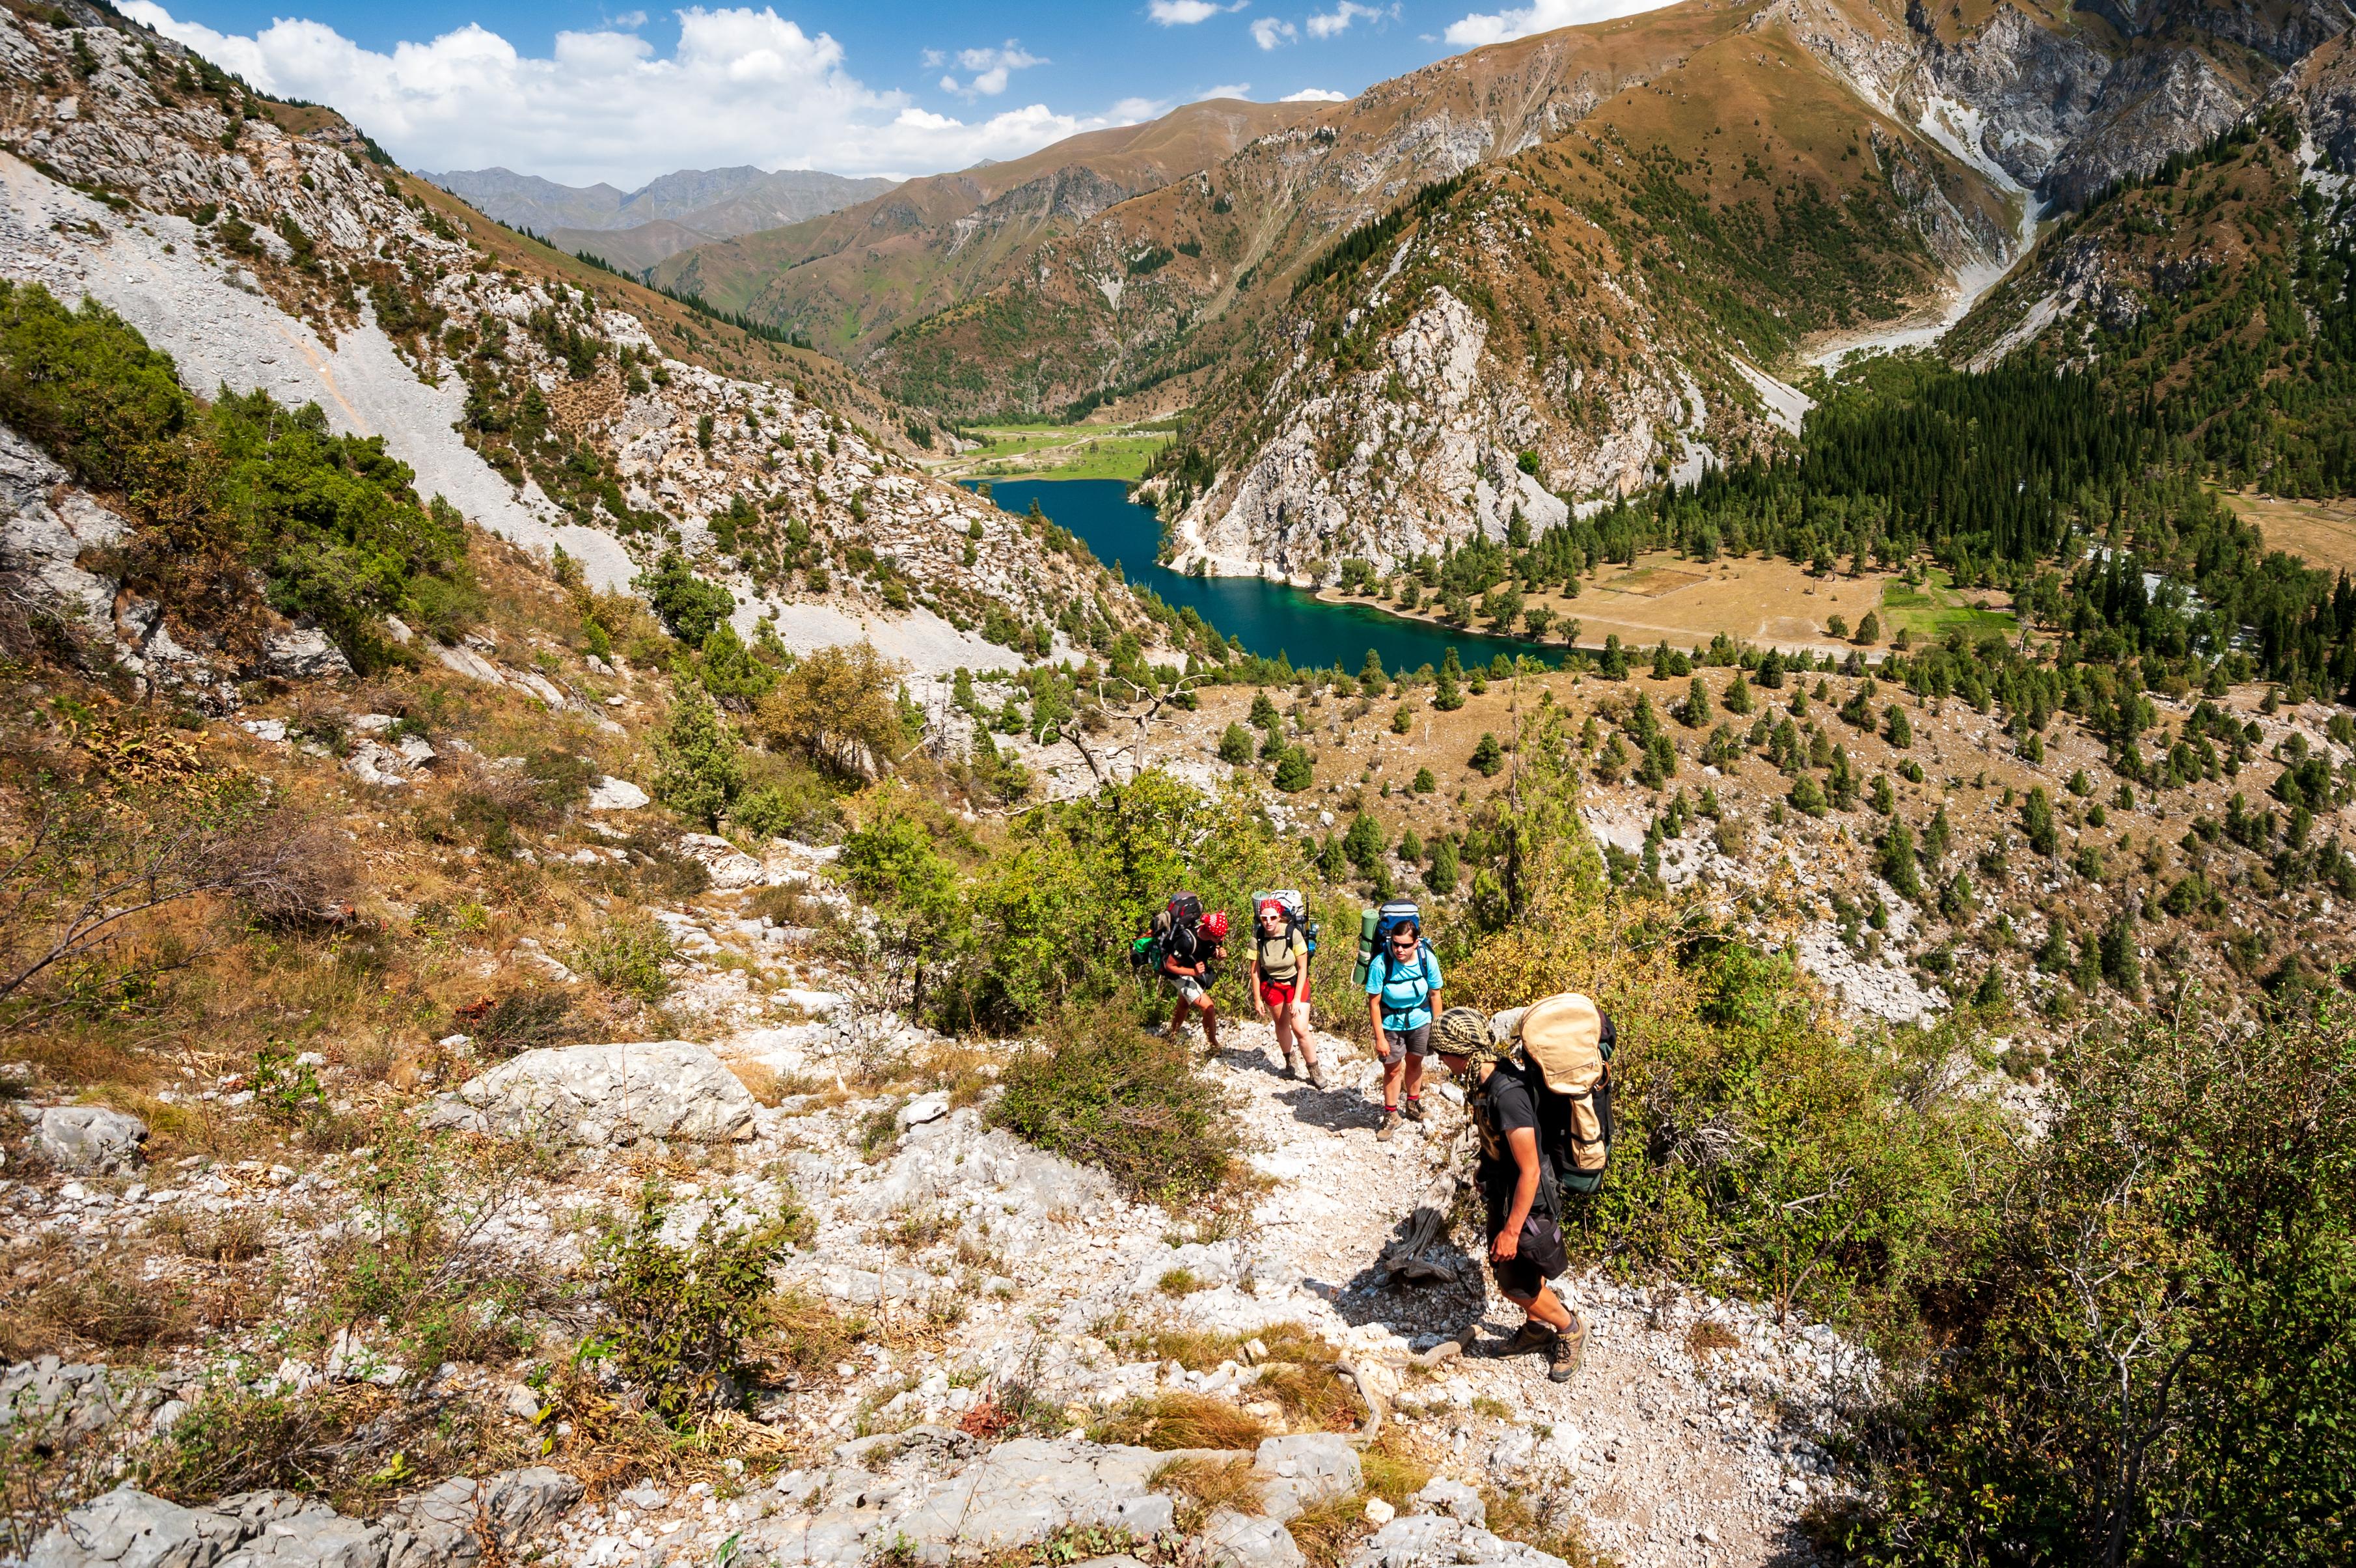 Hikers make their way through Sary Chelek © Baisa / Shutterstock